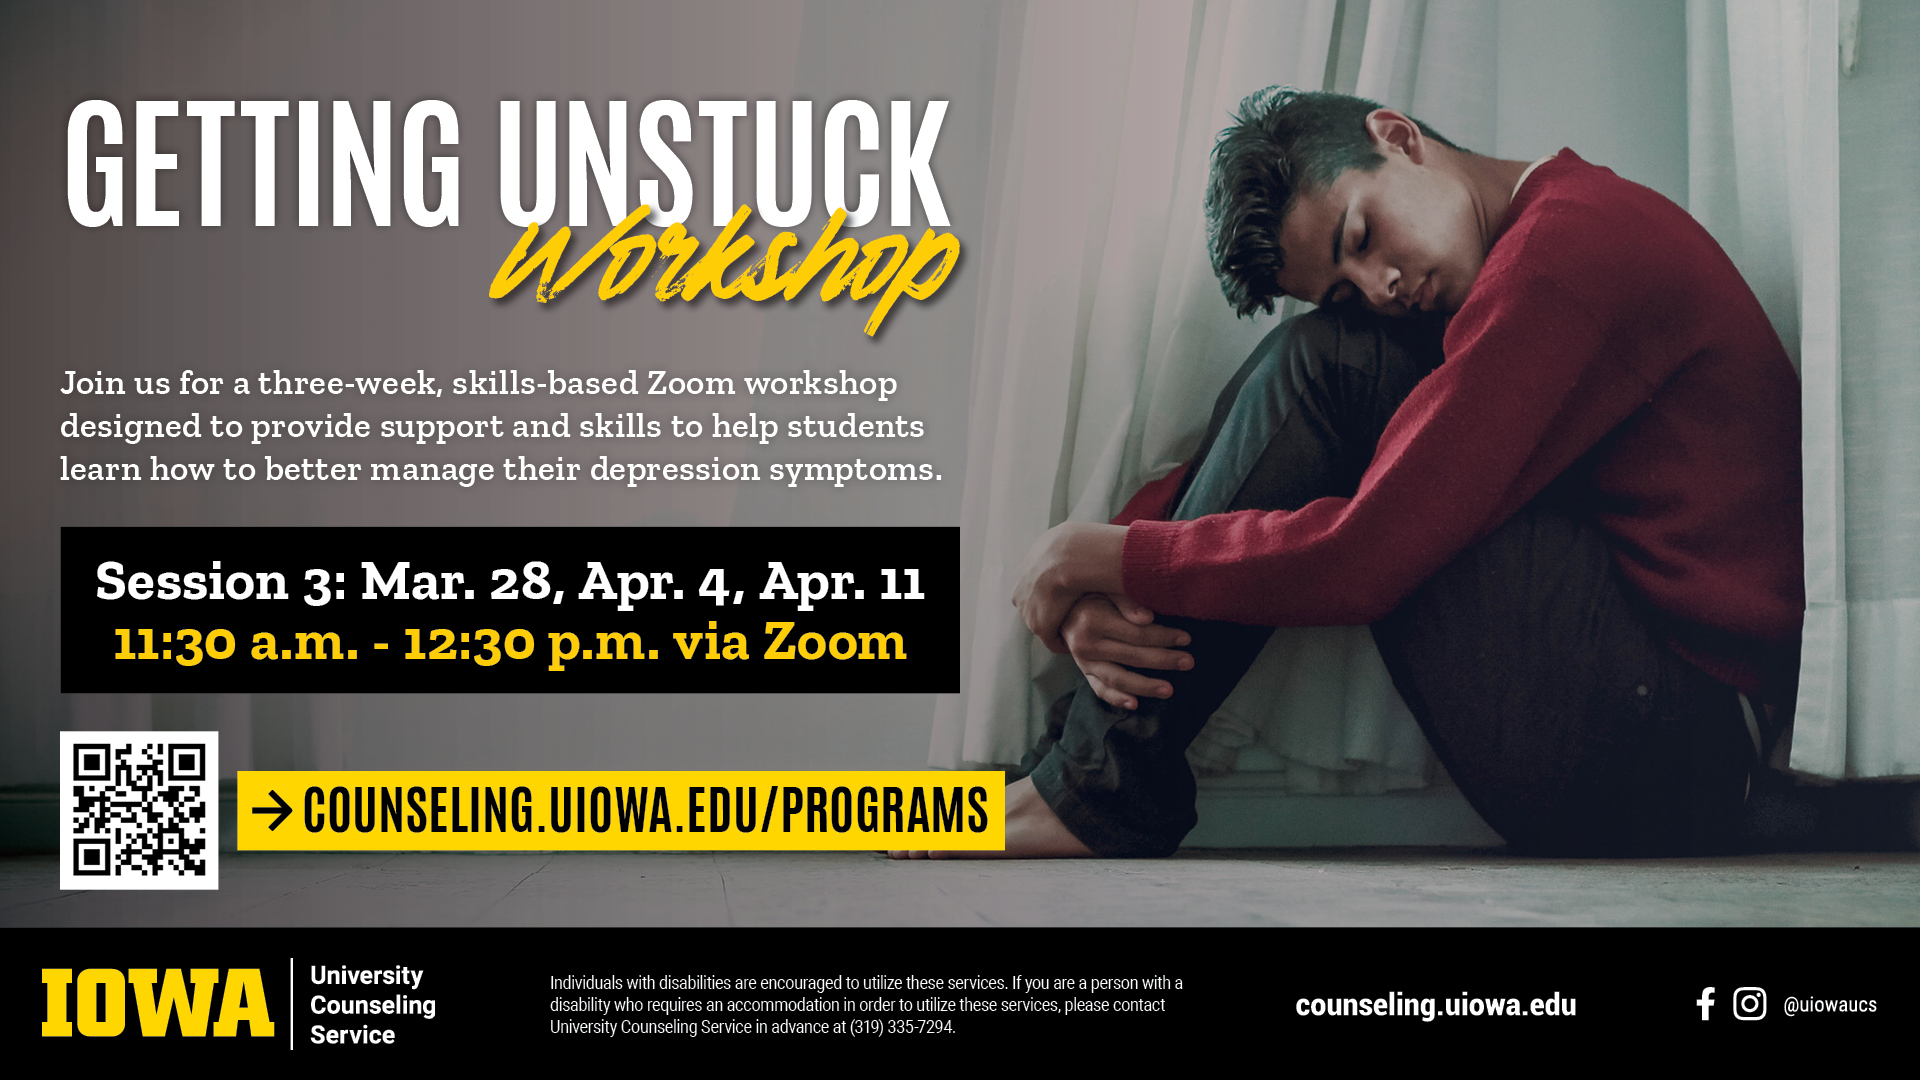 Getting Unstuck Workshop Session 3: March 28, April 4, April 11, 11:30am-12:30pm via zoom